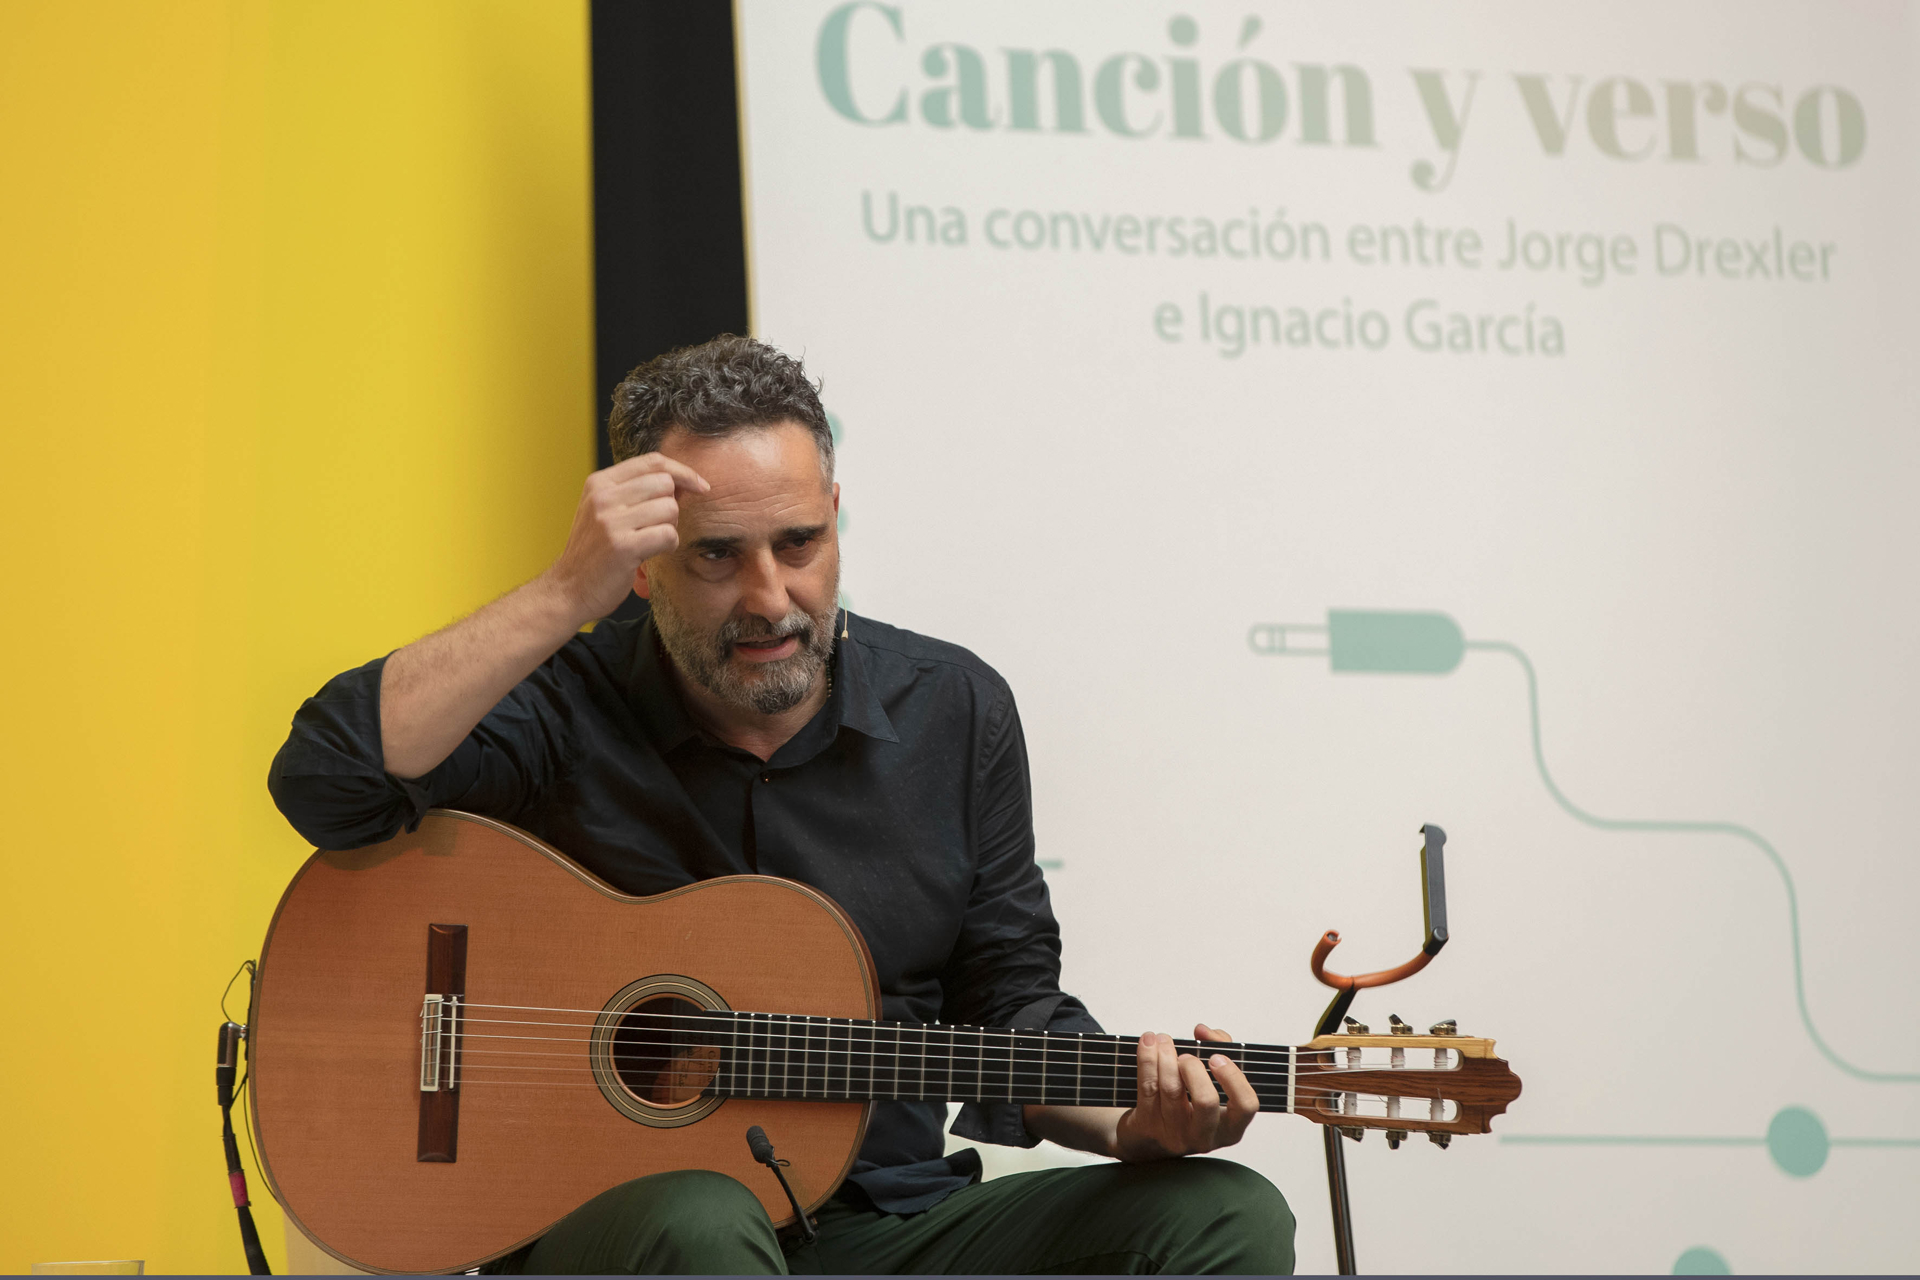 Jorge Drexler pasó por el Congreso de la Lengua: de la música a la literatura